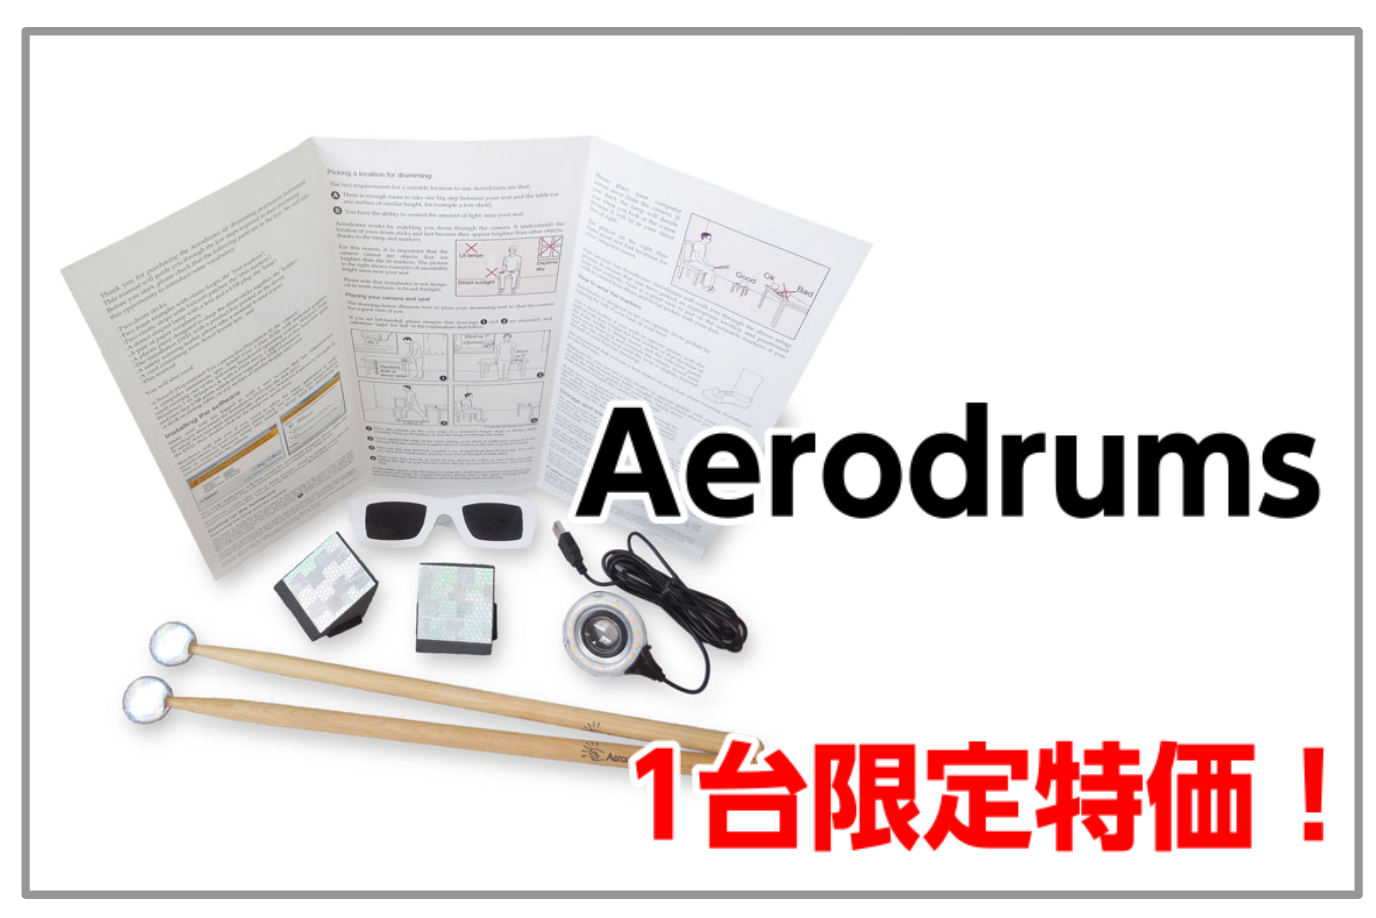 【プレゼントにも最適】Aerodrums 1台限りの大特価！